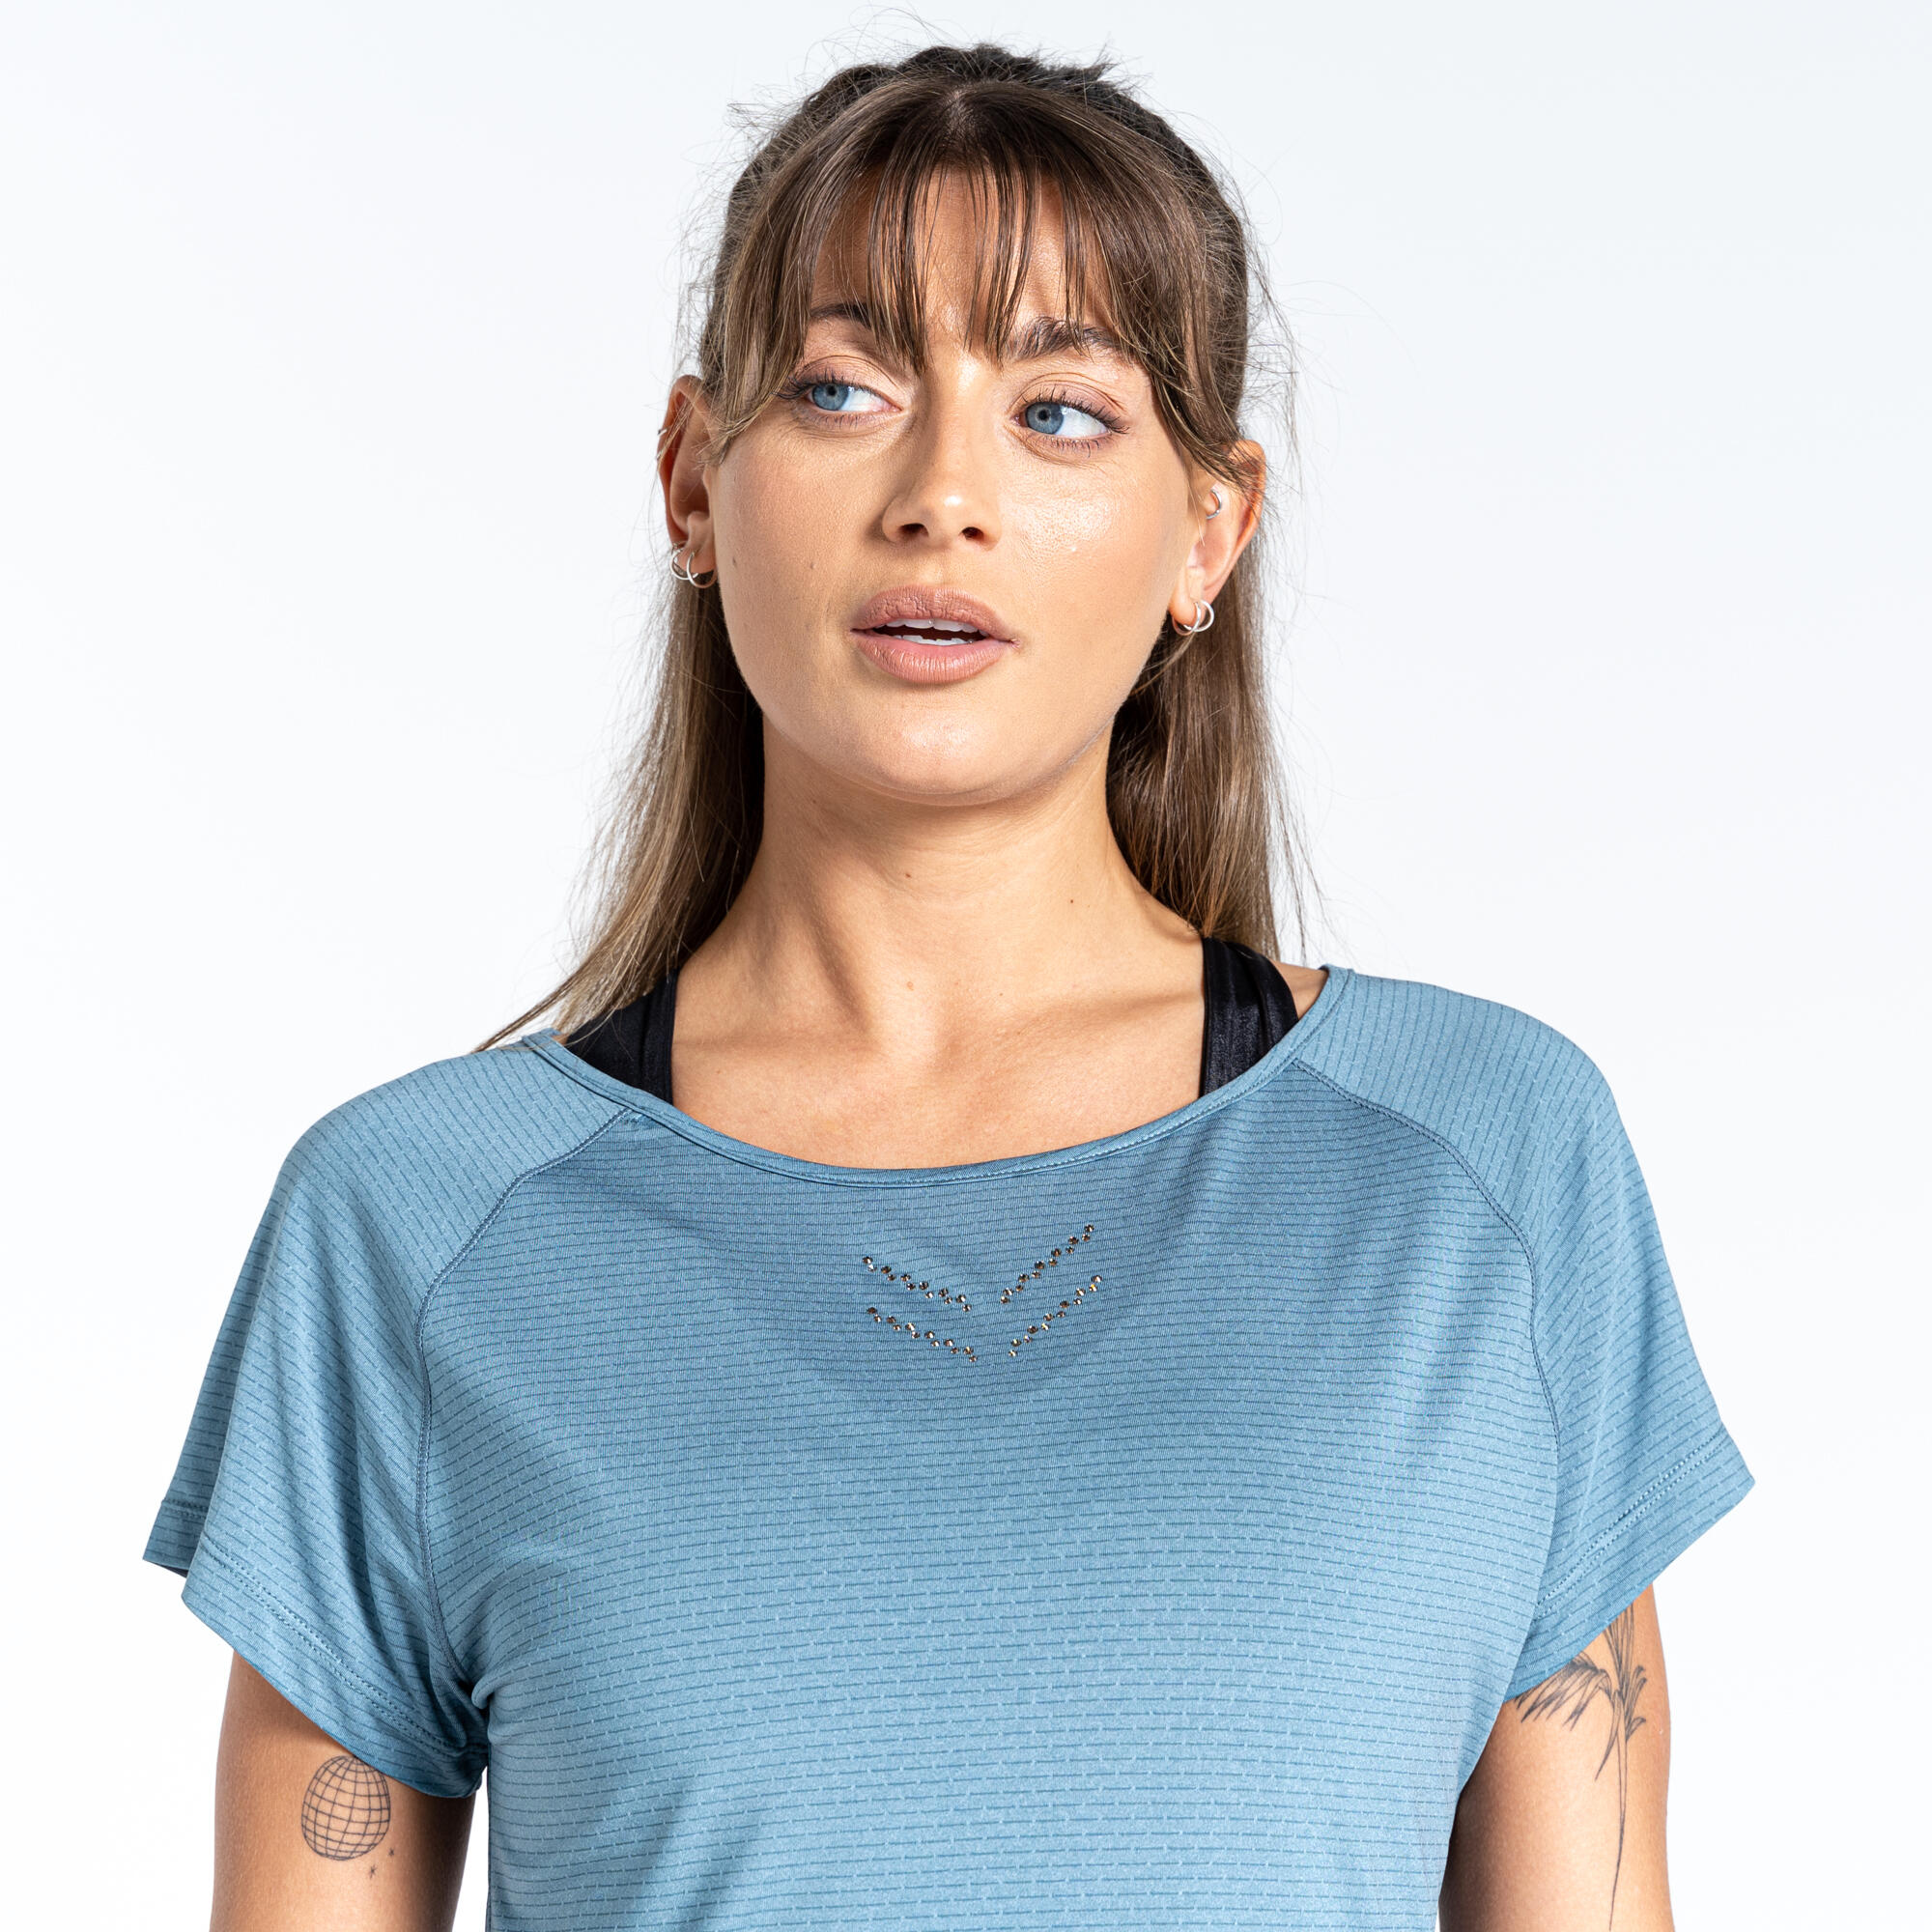 Cyrstallize Women's Fitness Short Sleeve T-Shirt - Blue Stone 4/5